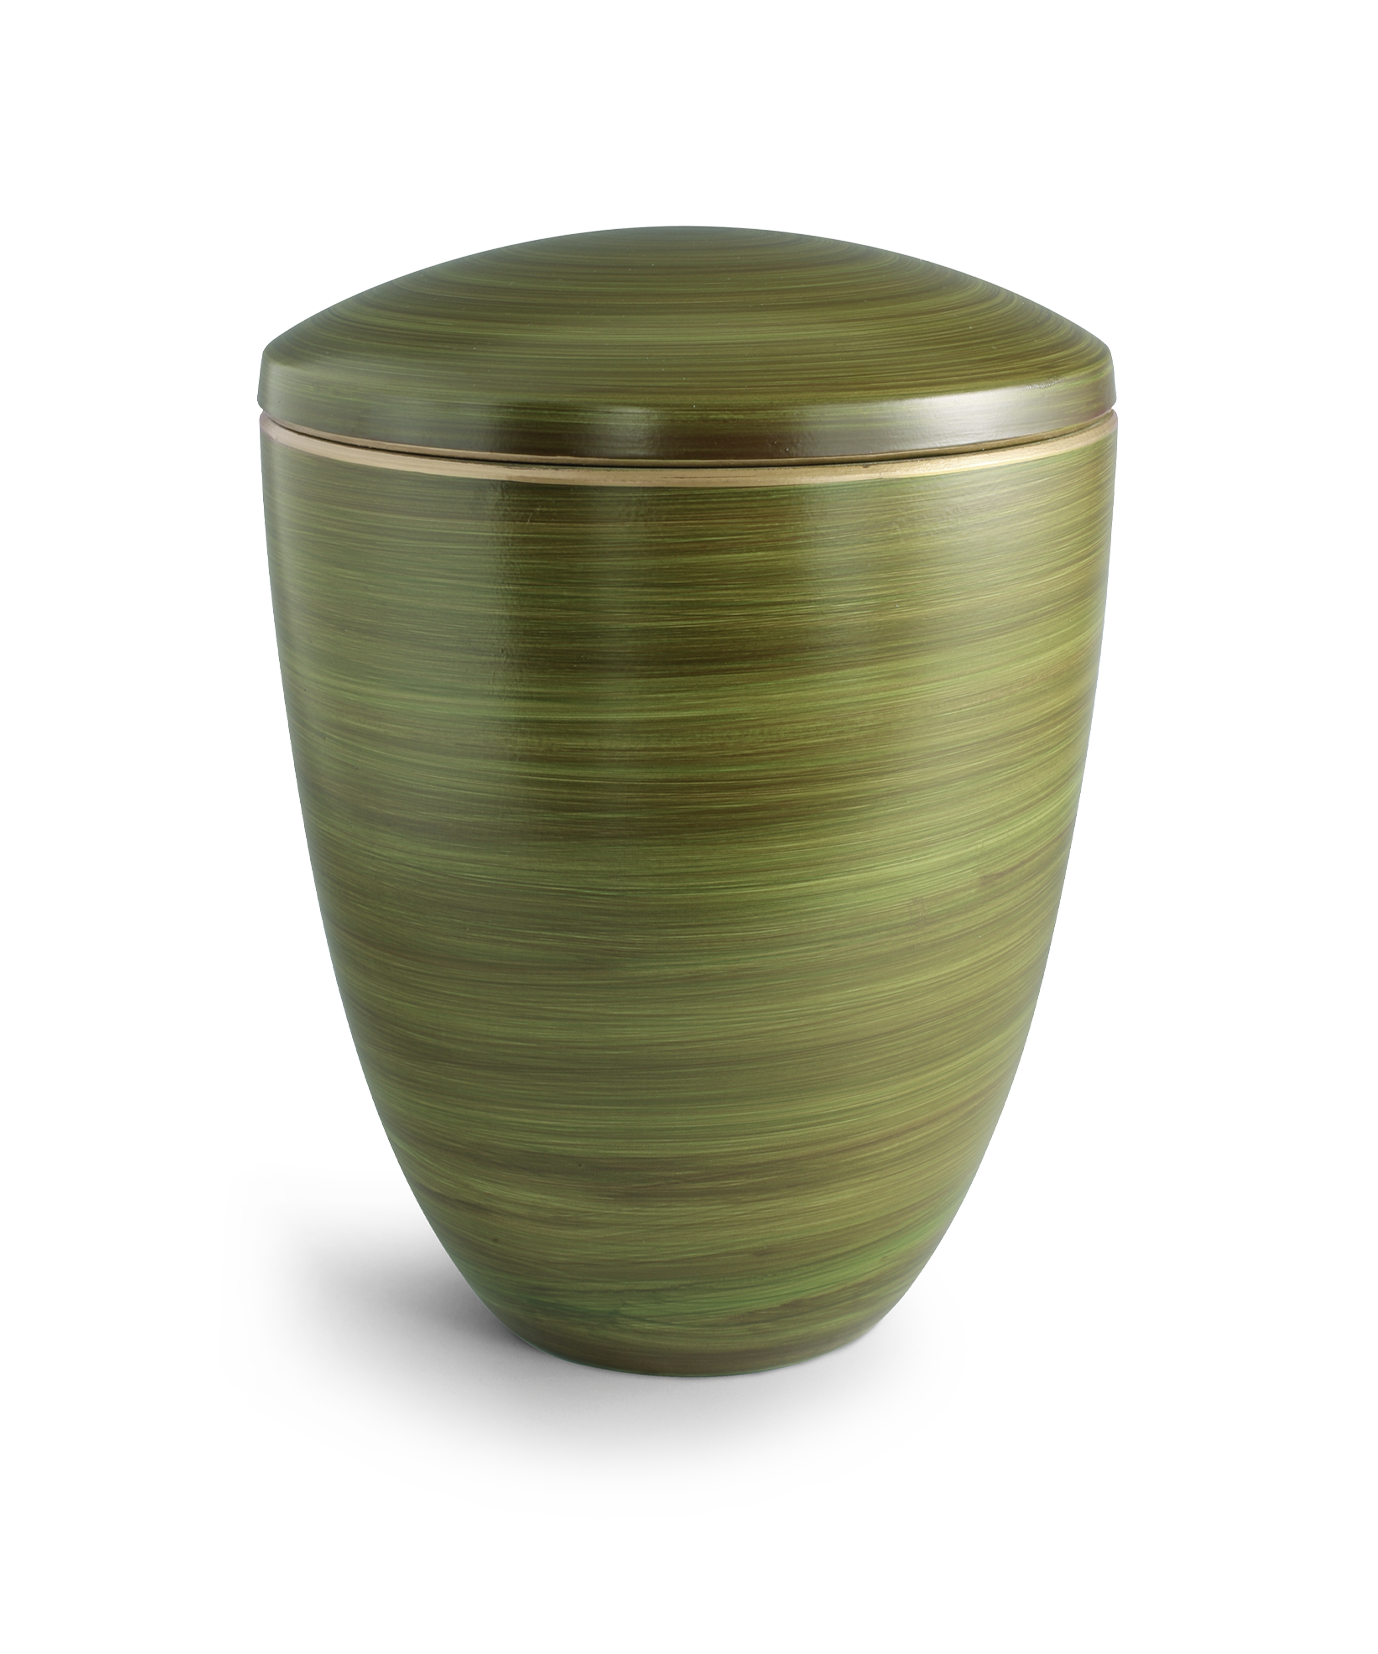 Völsing Urn Edition Ceramica Ceramic